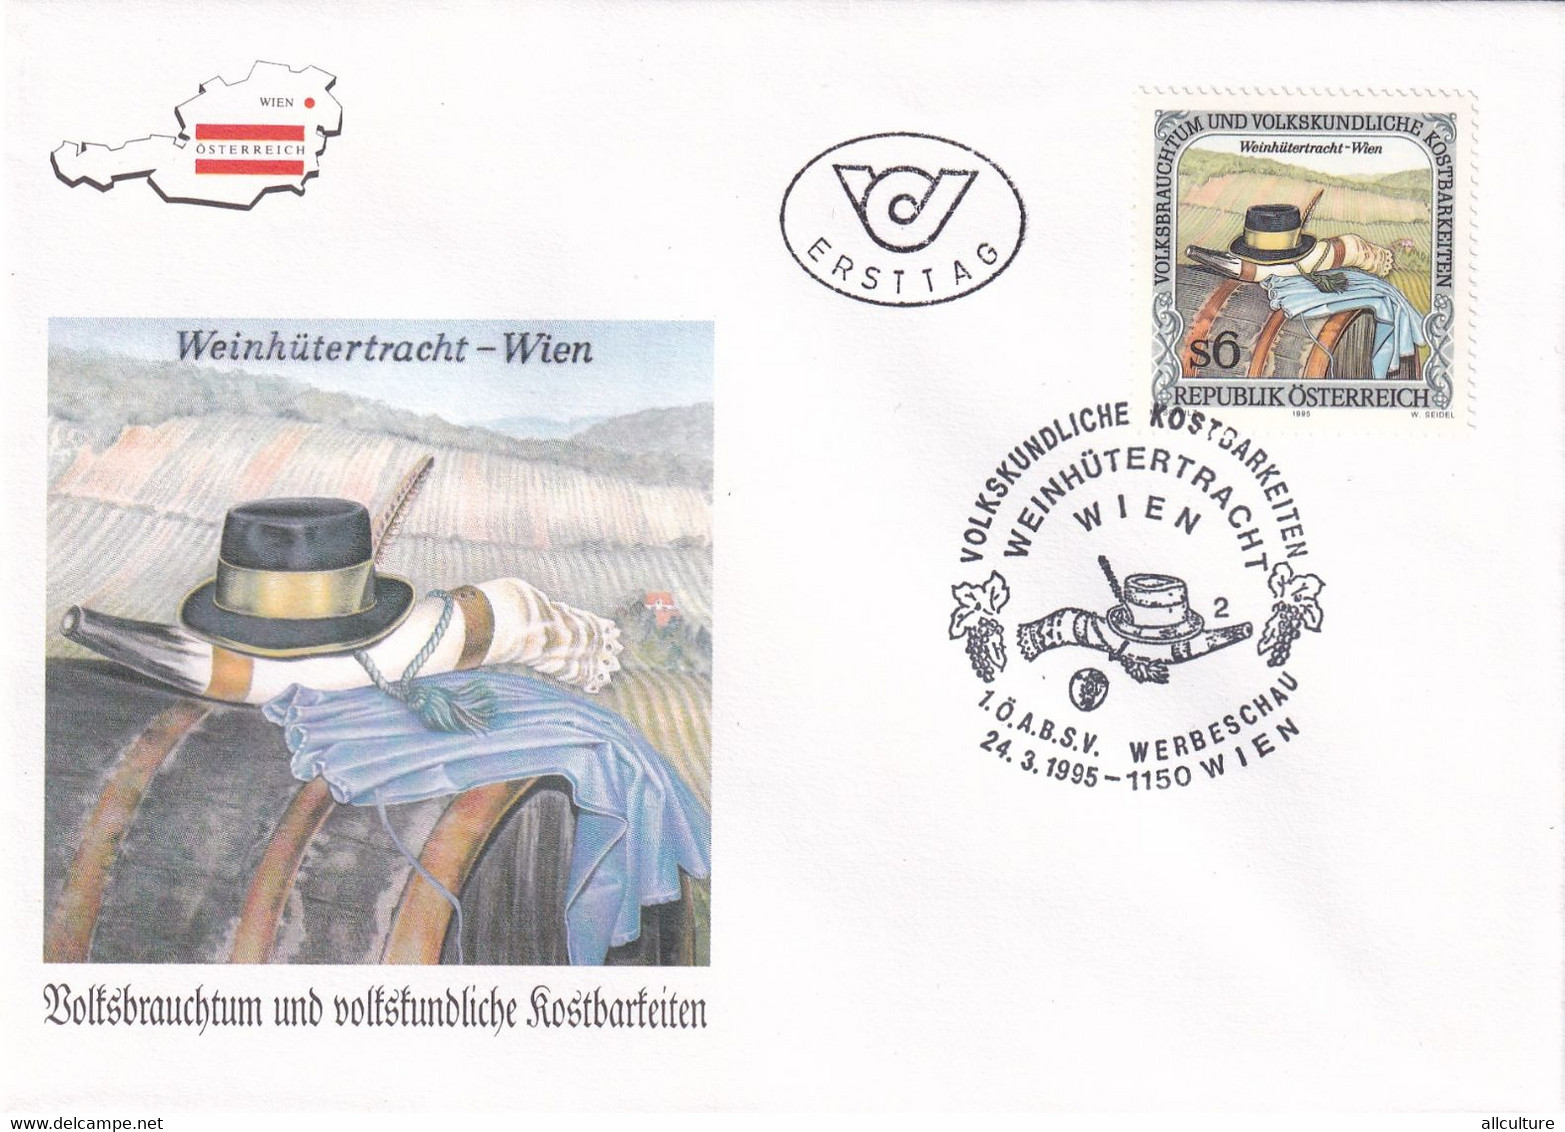 A8187 - WEINHUTERTRACHT, WEIN, ERSTTAG 1995  REPUBLIC OESTERREICH USED STAMP ON COVER AUSTRIA - Storia Postale